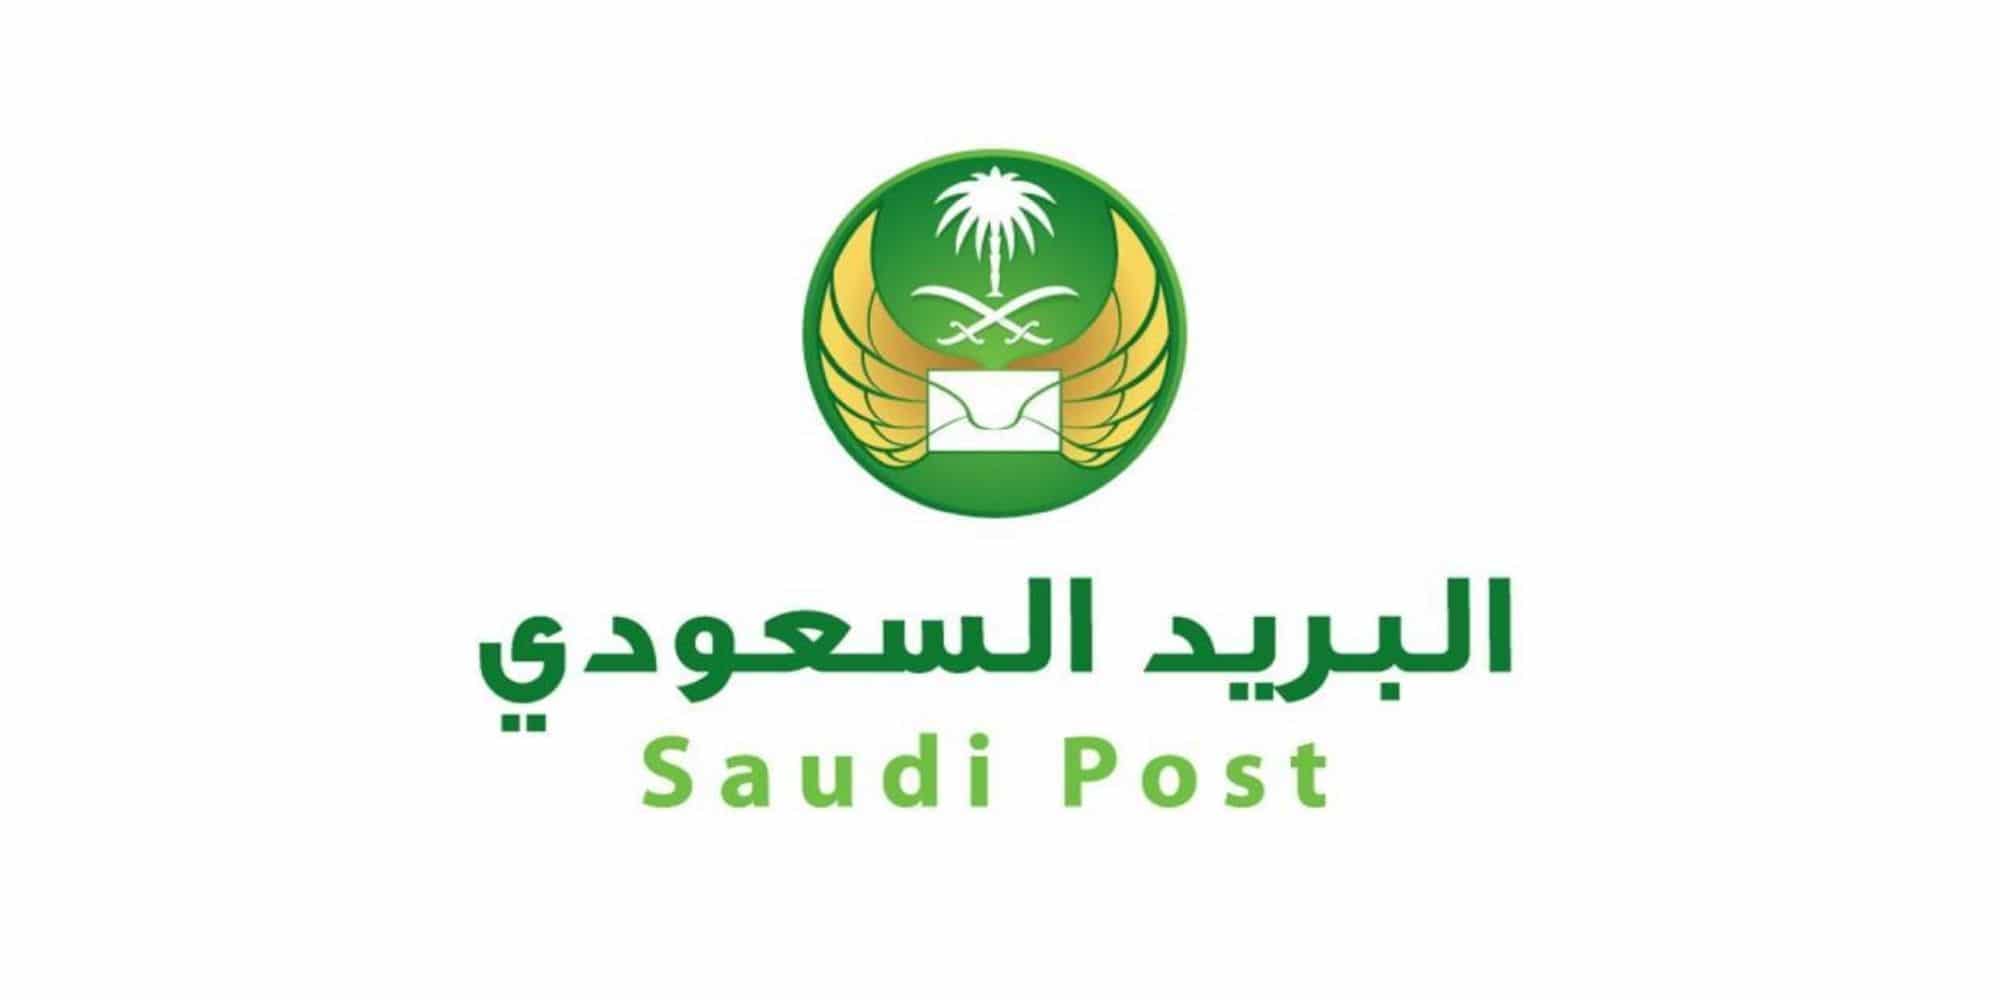 البريد التسجيل السعودي في التسجيل في